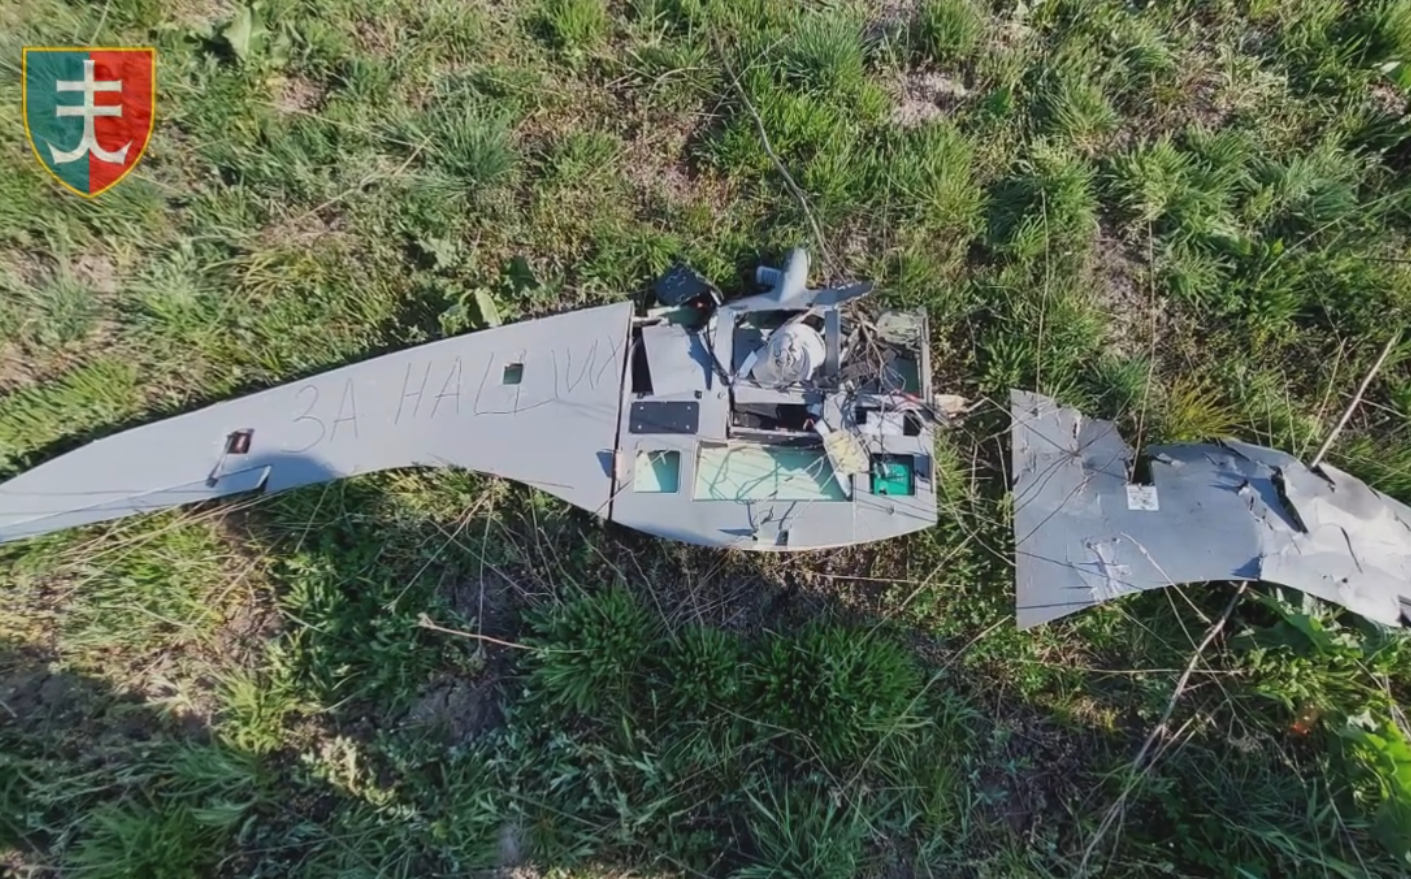 Вражеская "птичка" долеталась: украинские зенитчики уничтожили российский разведывательный дрон Supercam. Видео